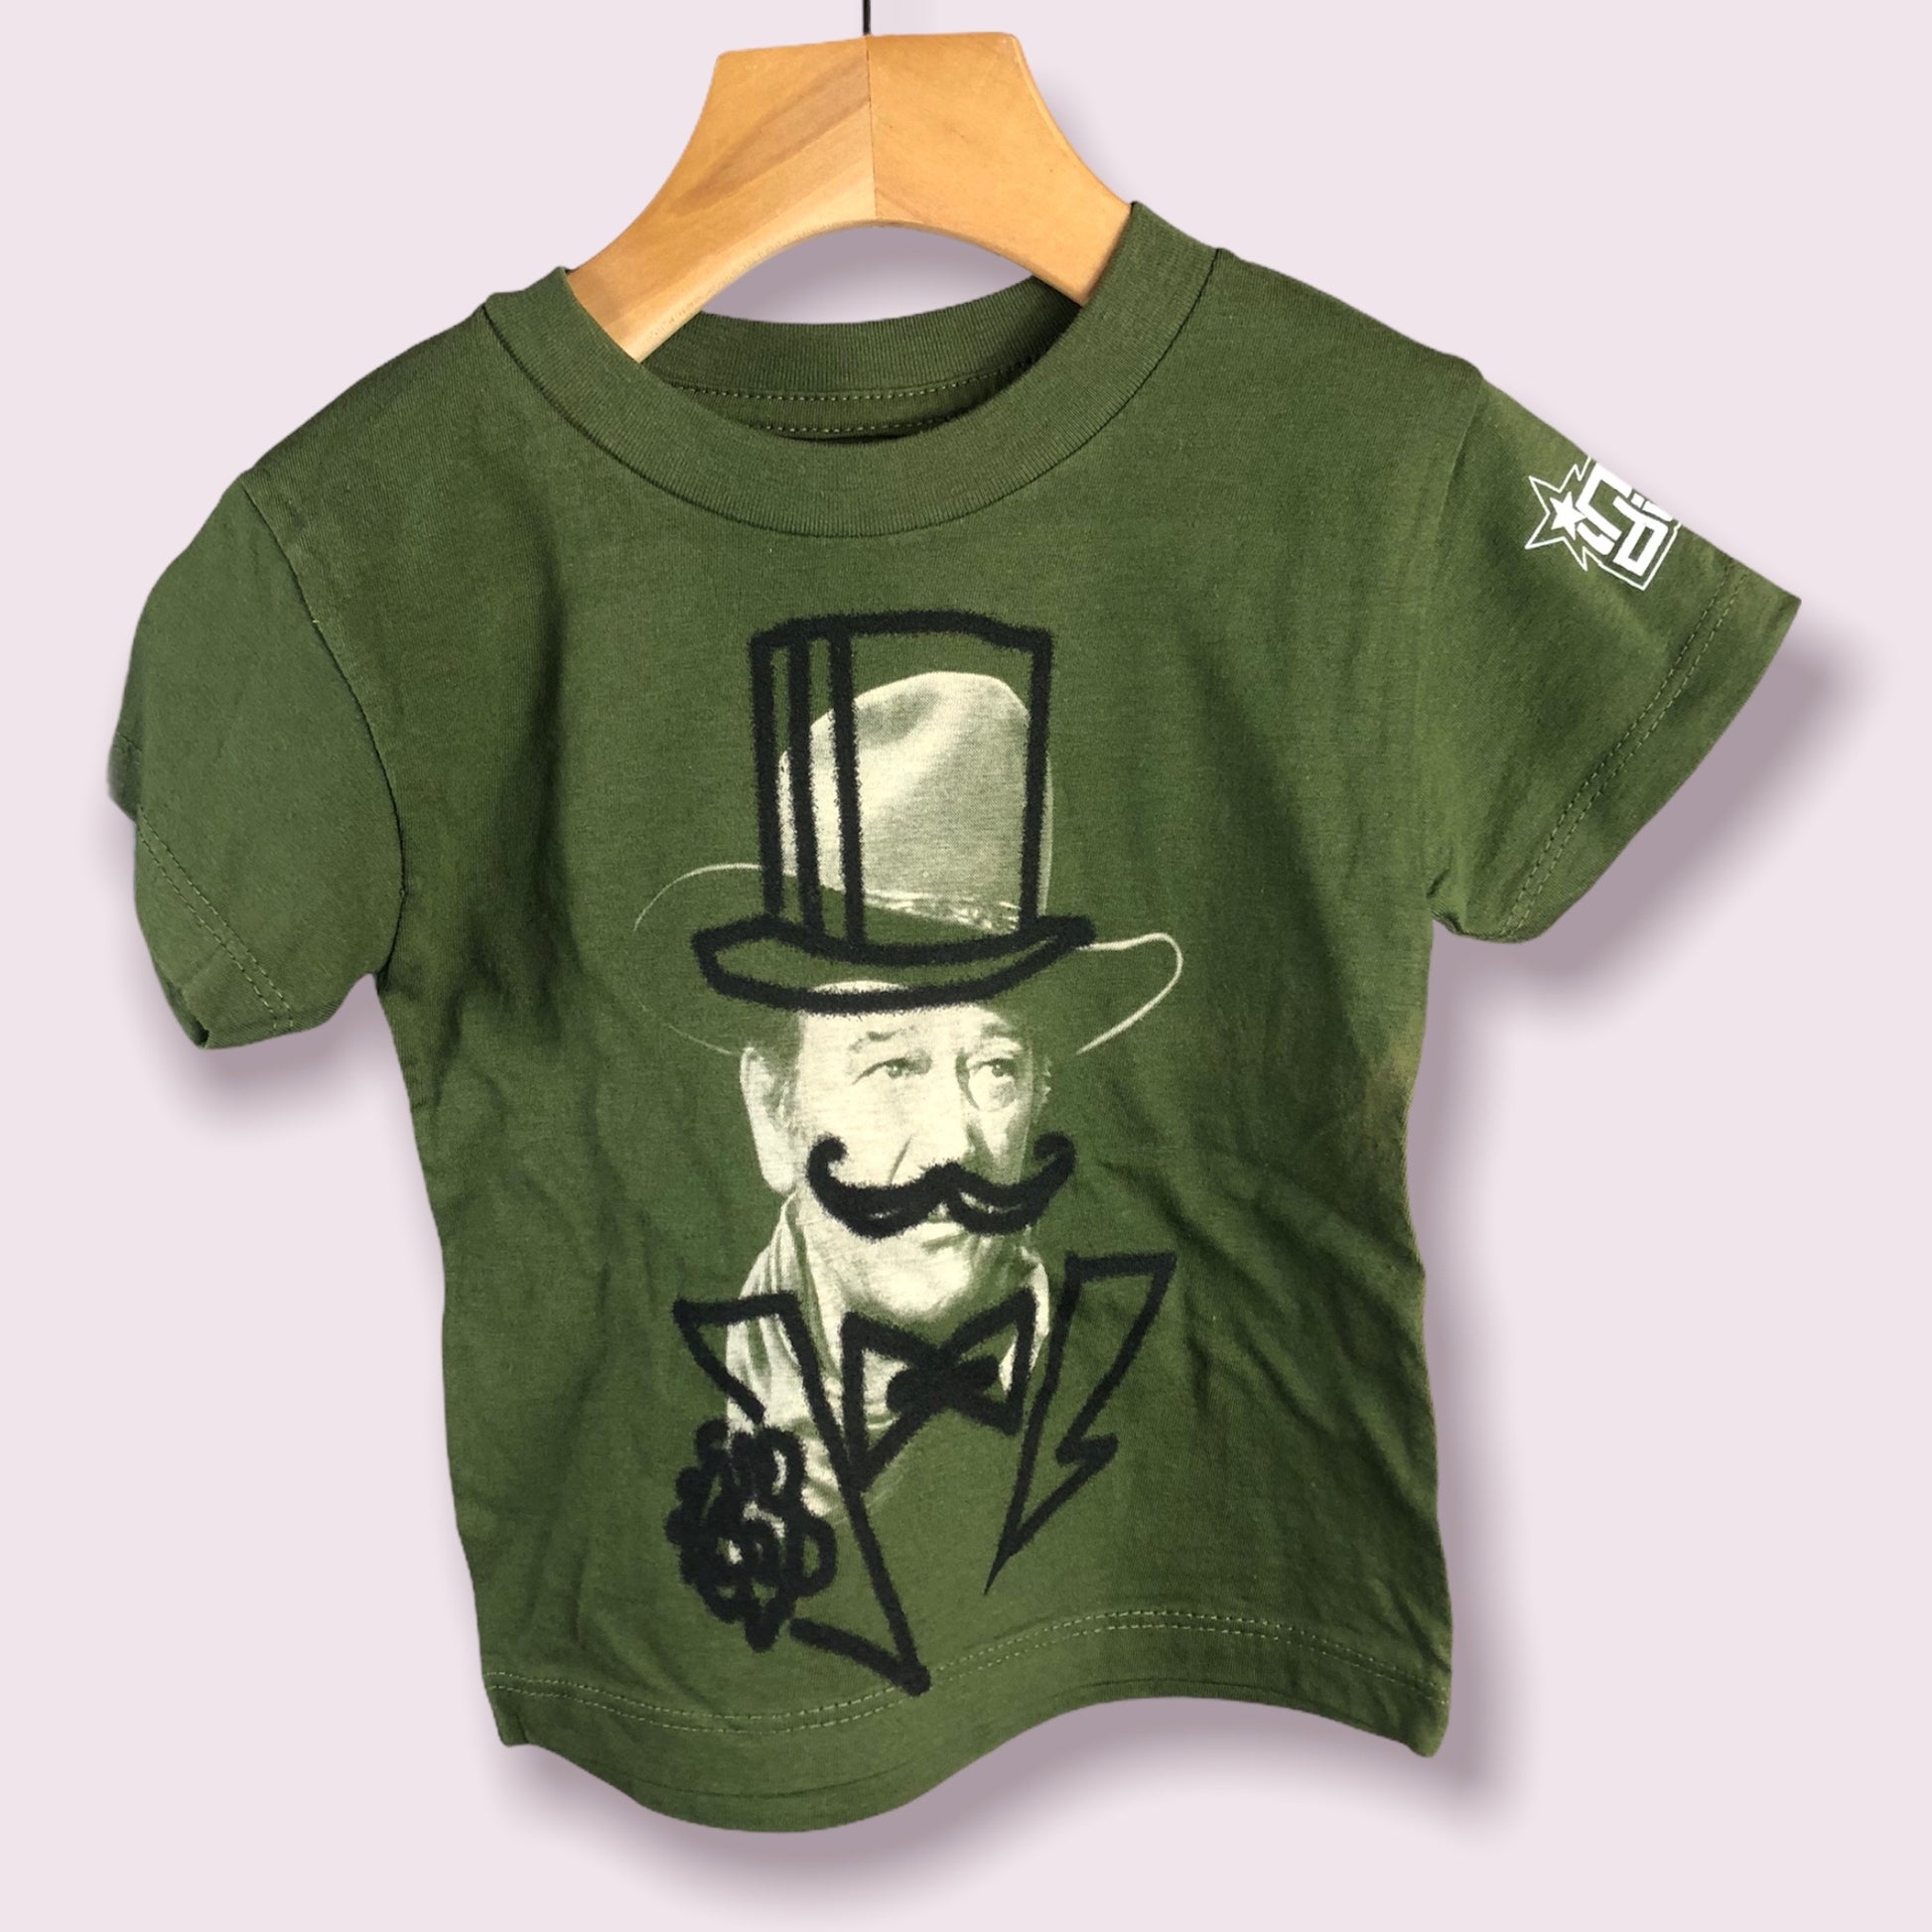 John Wayne Toddler Shirt